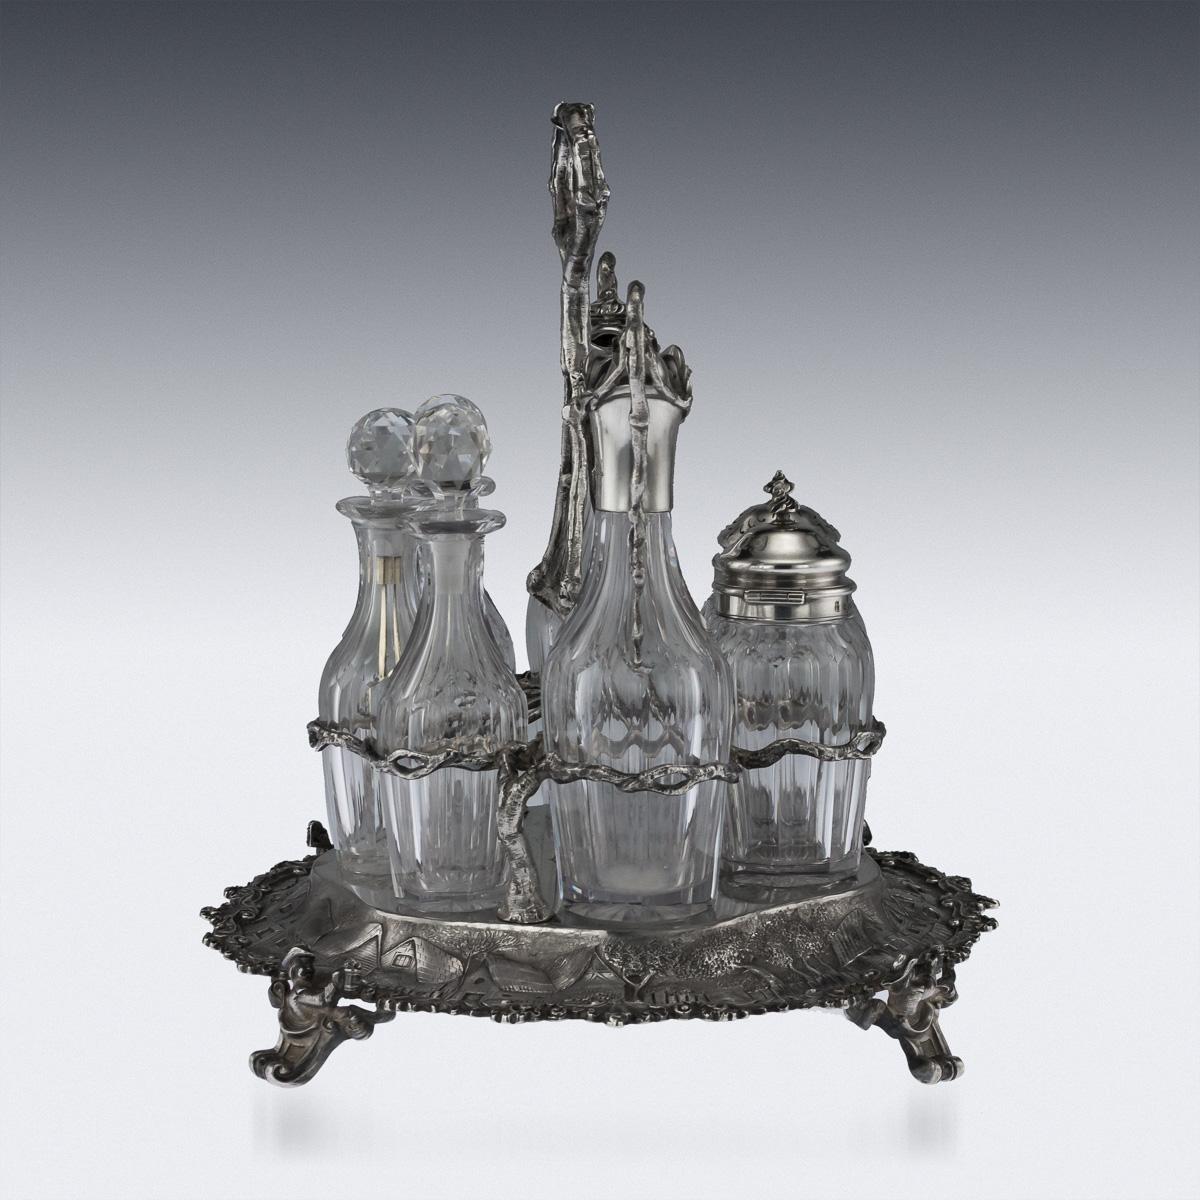 Antikes, äußerst seltenes Gewürzset aus massivem Silber und Glas aus dem 19. Jahrhundert, bestehend aus einem Kreuzständer, fünf Saucenflaschen und zwei Gewürzgläsern mit Silberdeckel, hergestellt im Teniers-Stil (ein berühmter holländischer Maler).